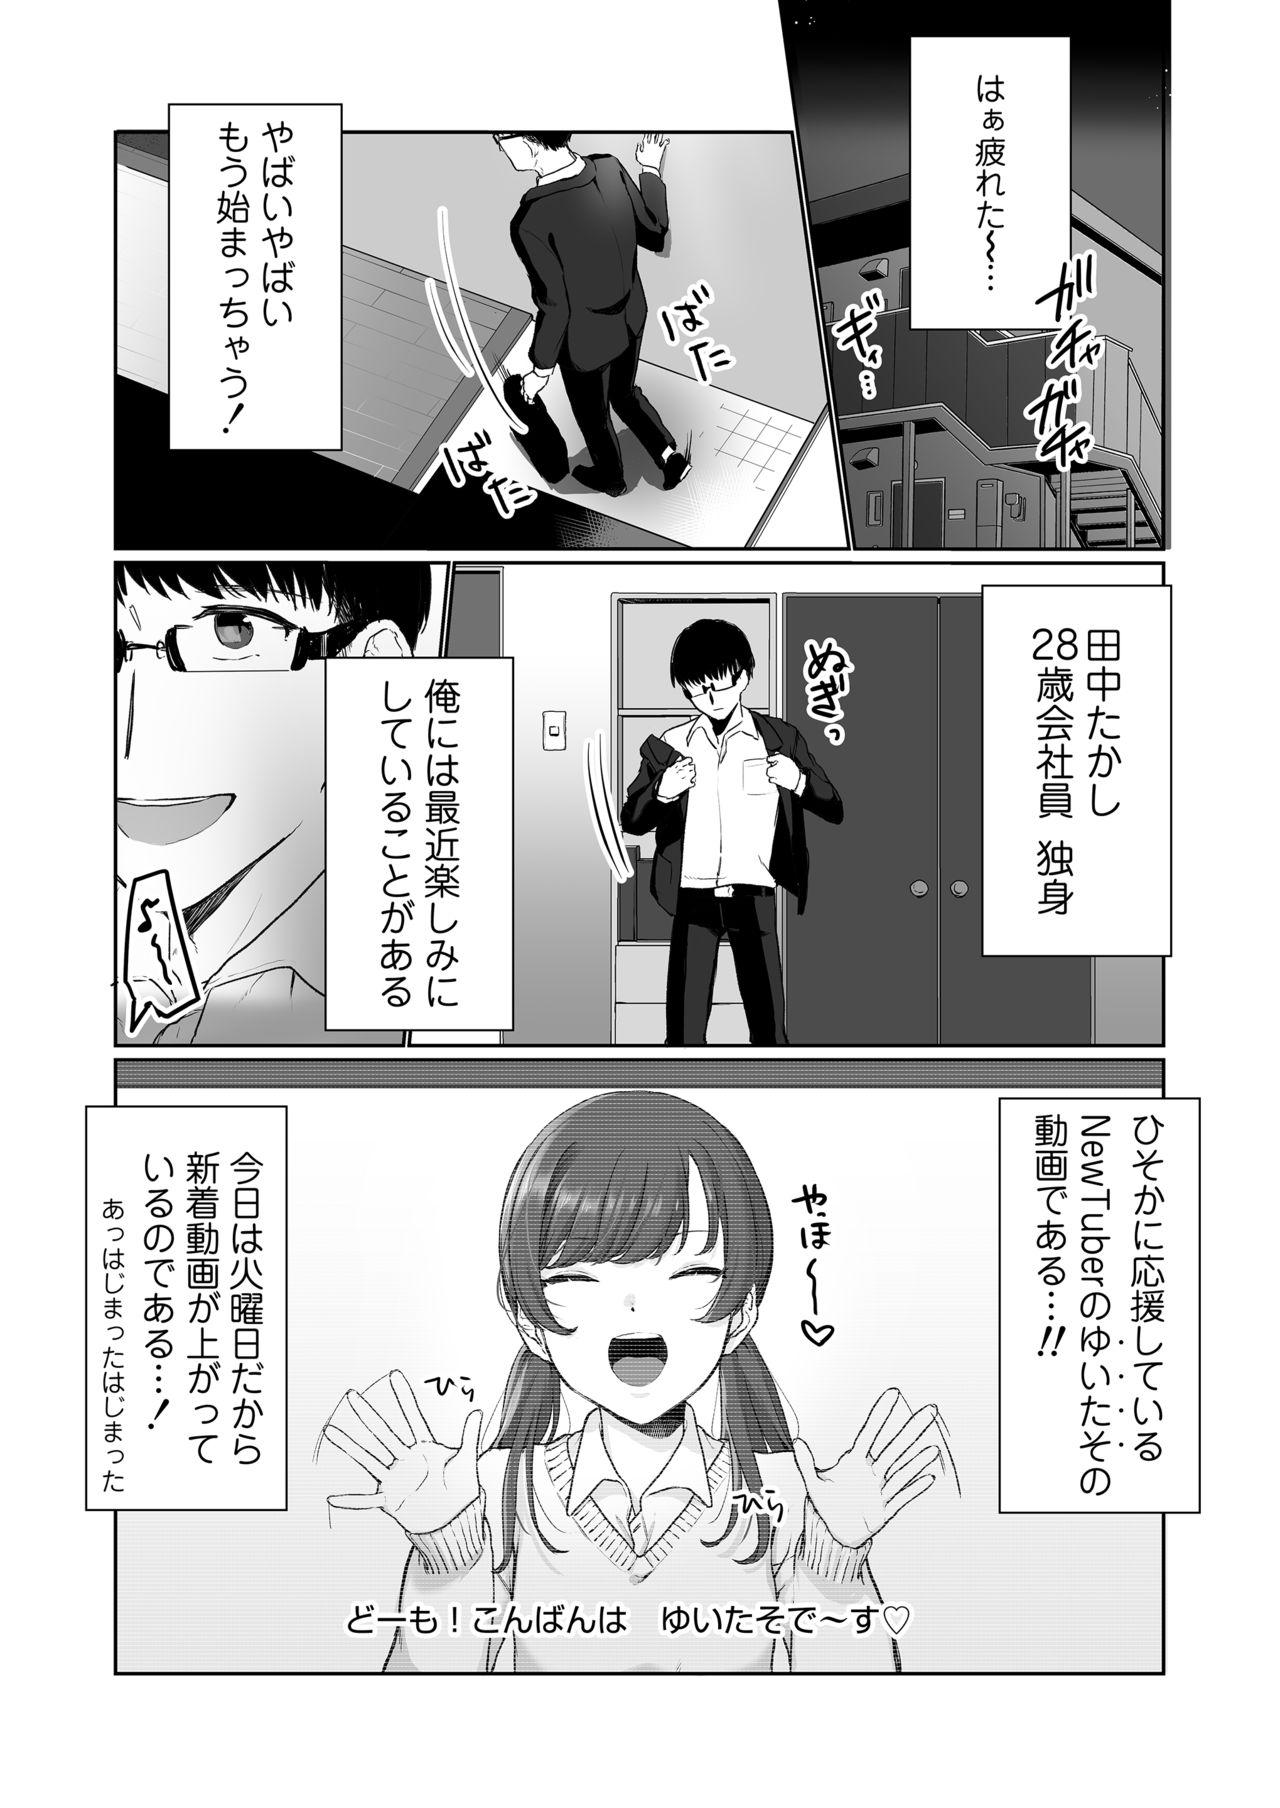 Leche Ninki JK Haishinsha no Ura no Kao - Original Tats - Page 2